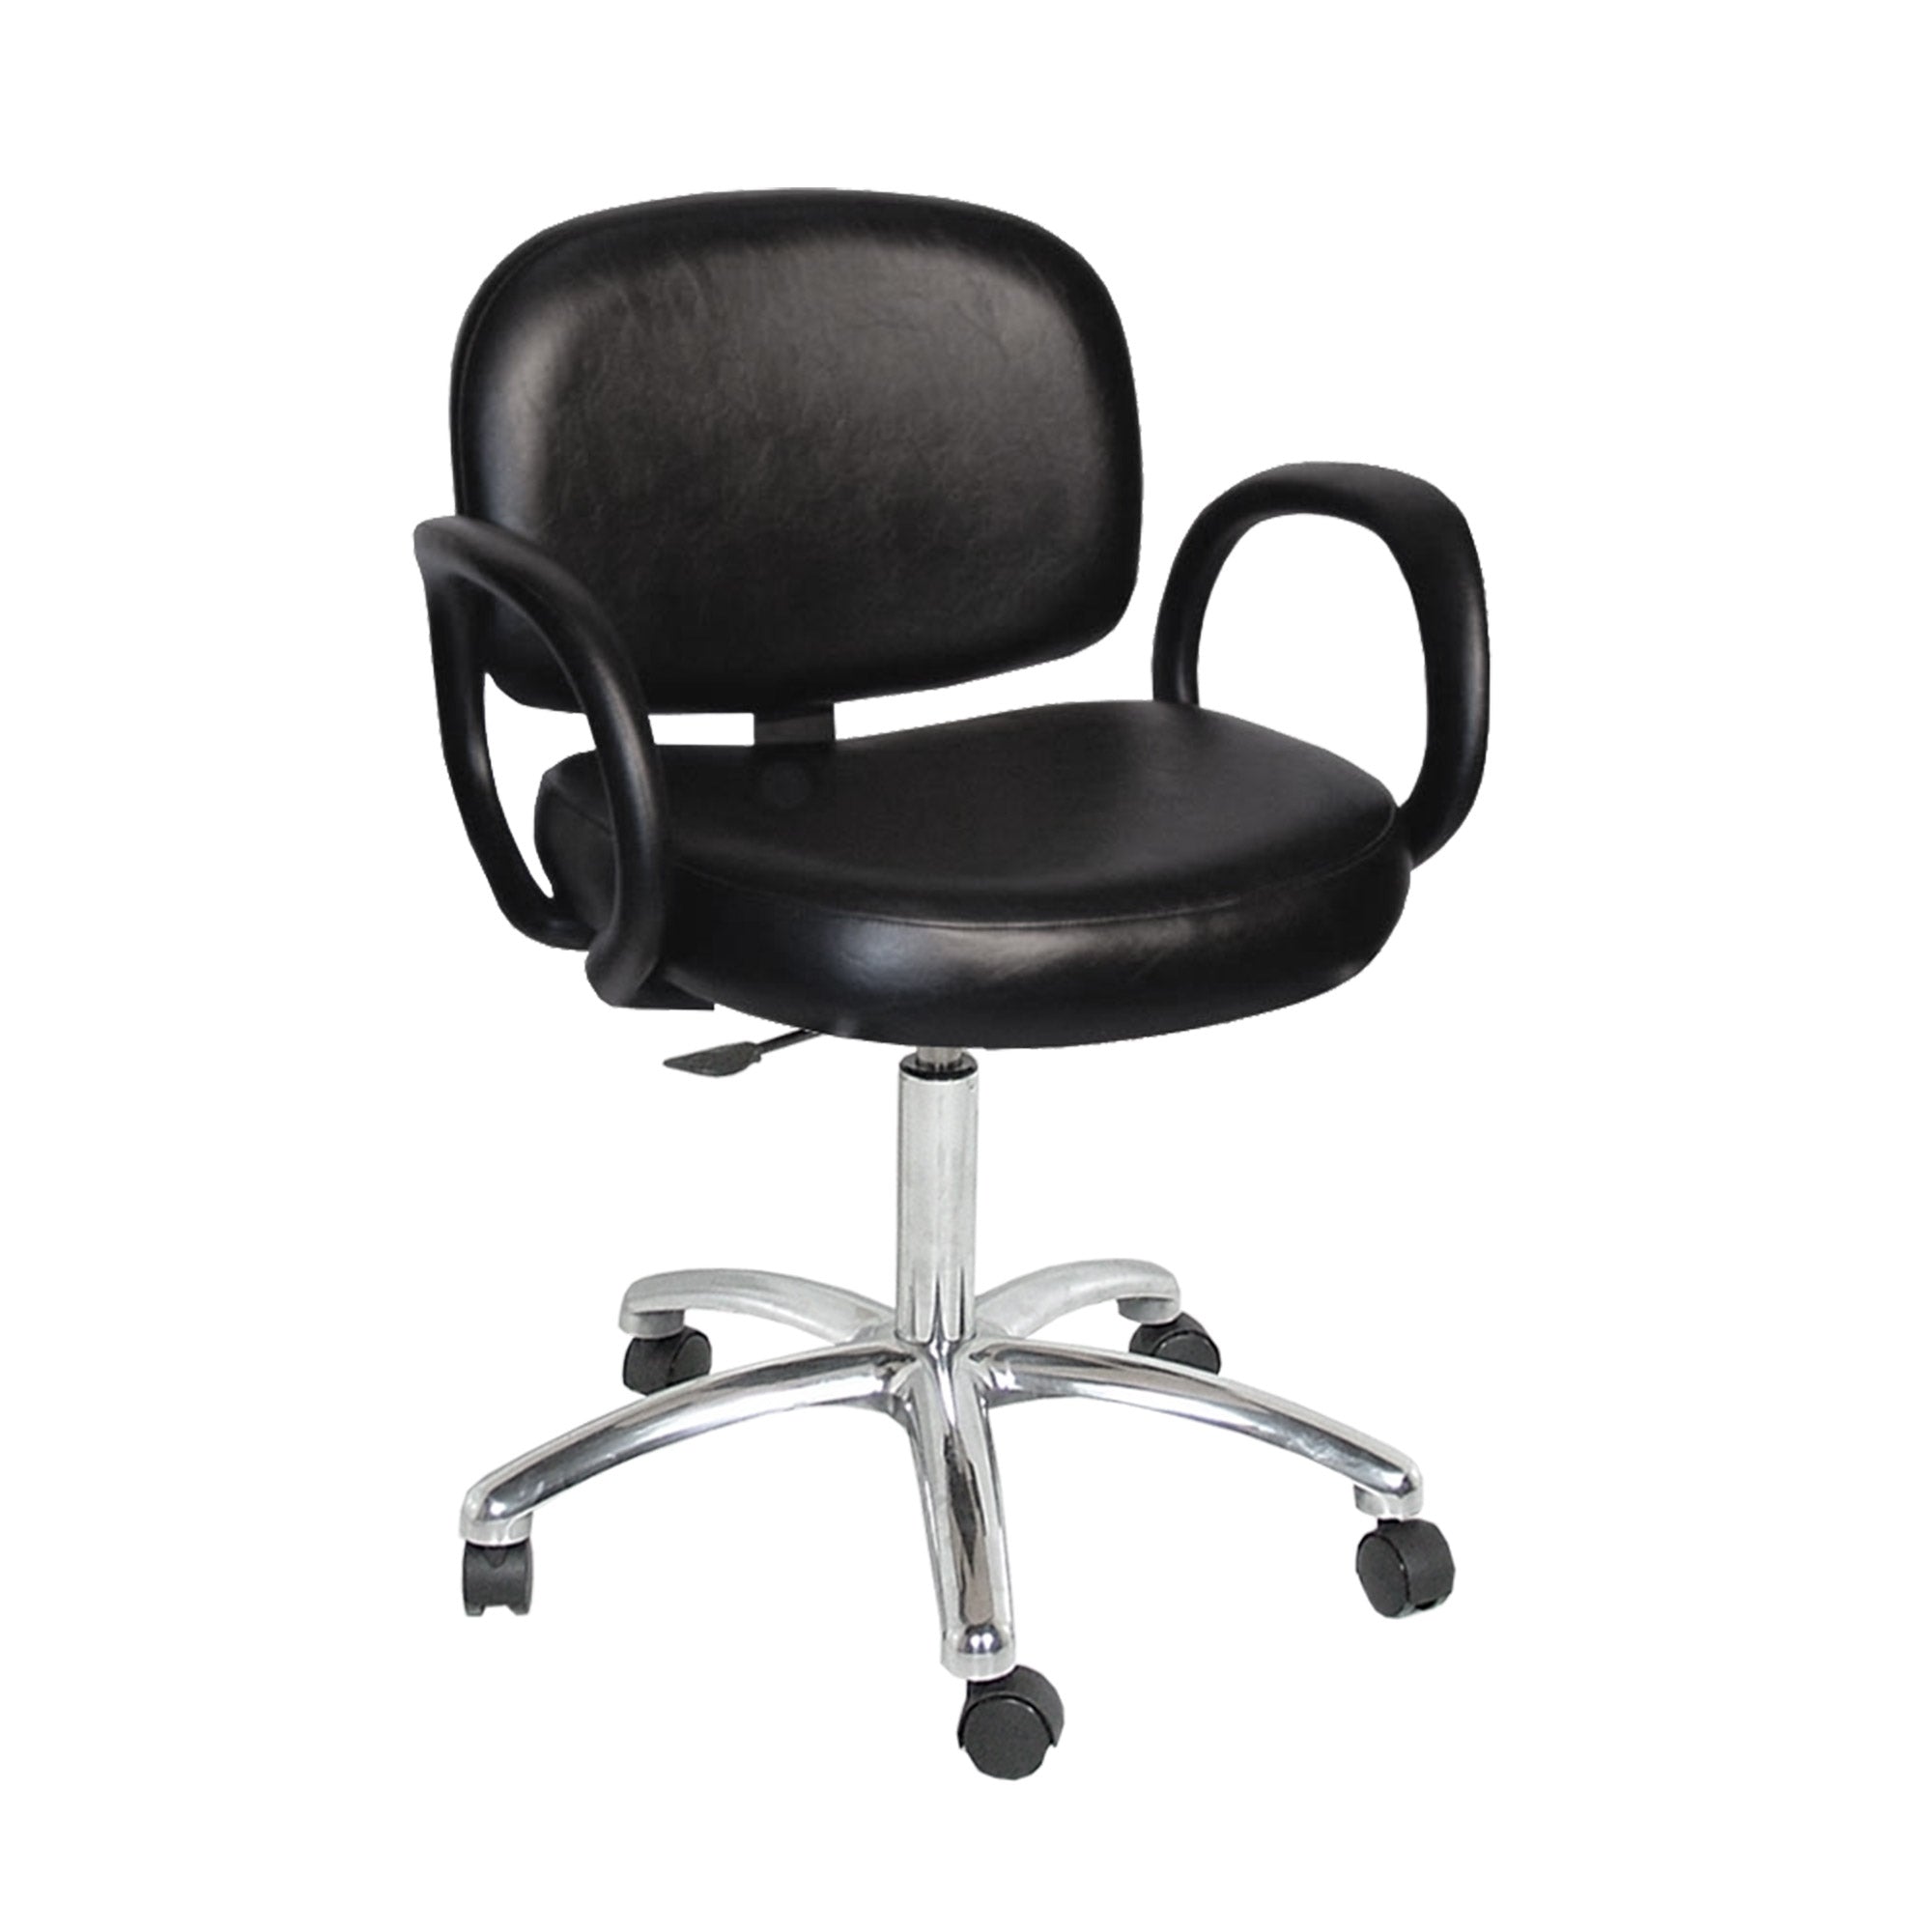 Kiva Task Chair - Collins